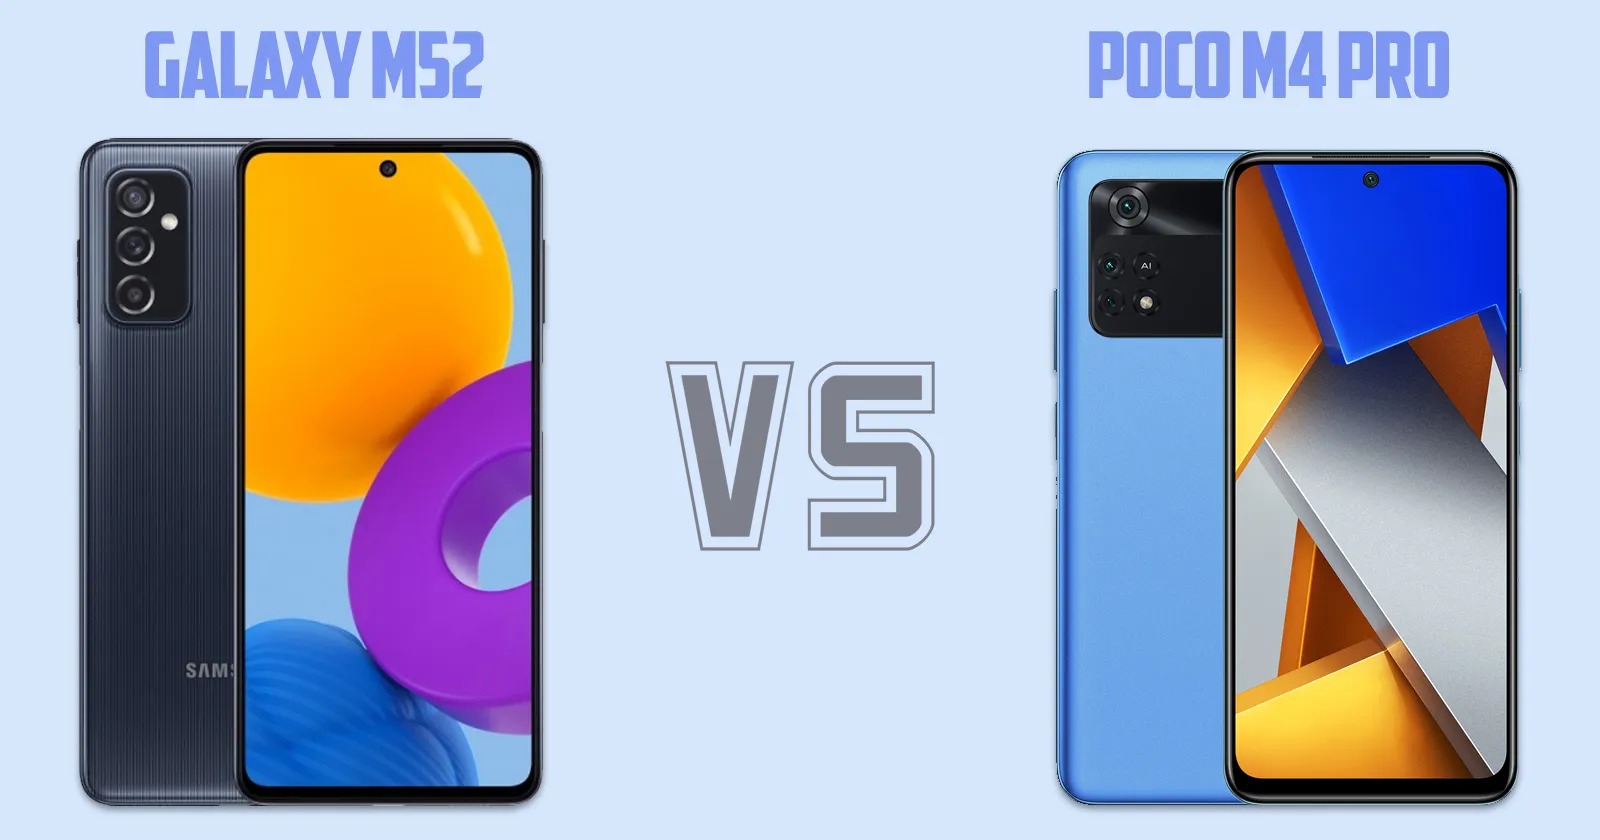 Samsung Galaxy M52 vs Xiaomi Poco M4 Pro [ Full Comparison ]